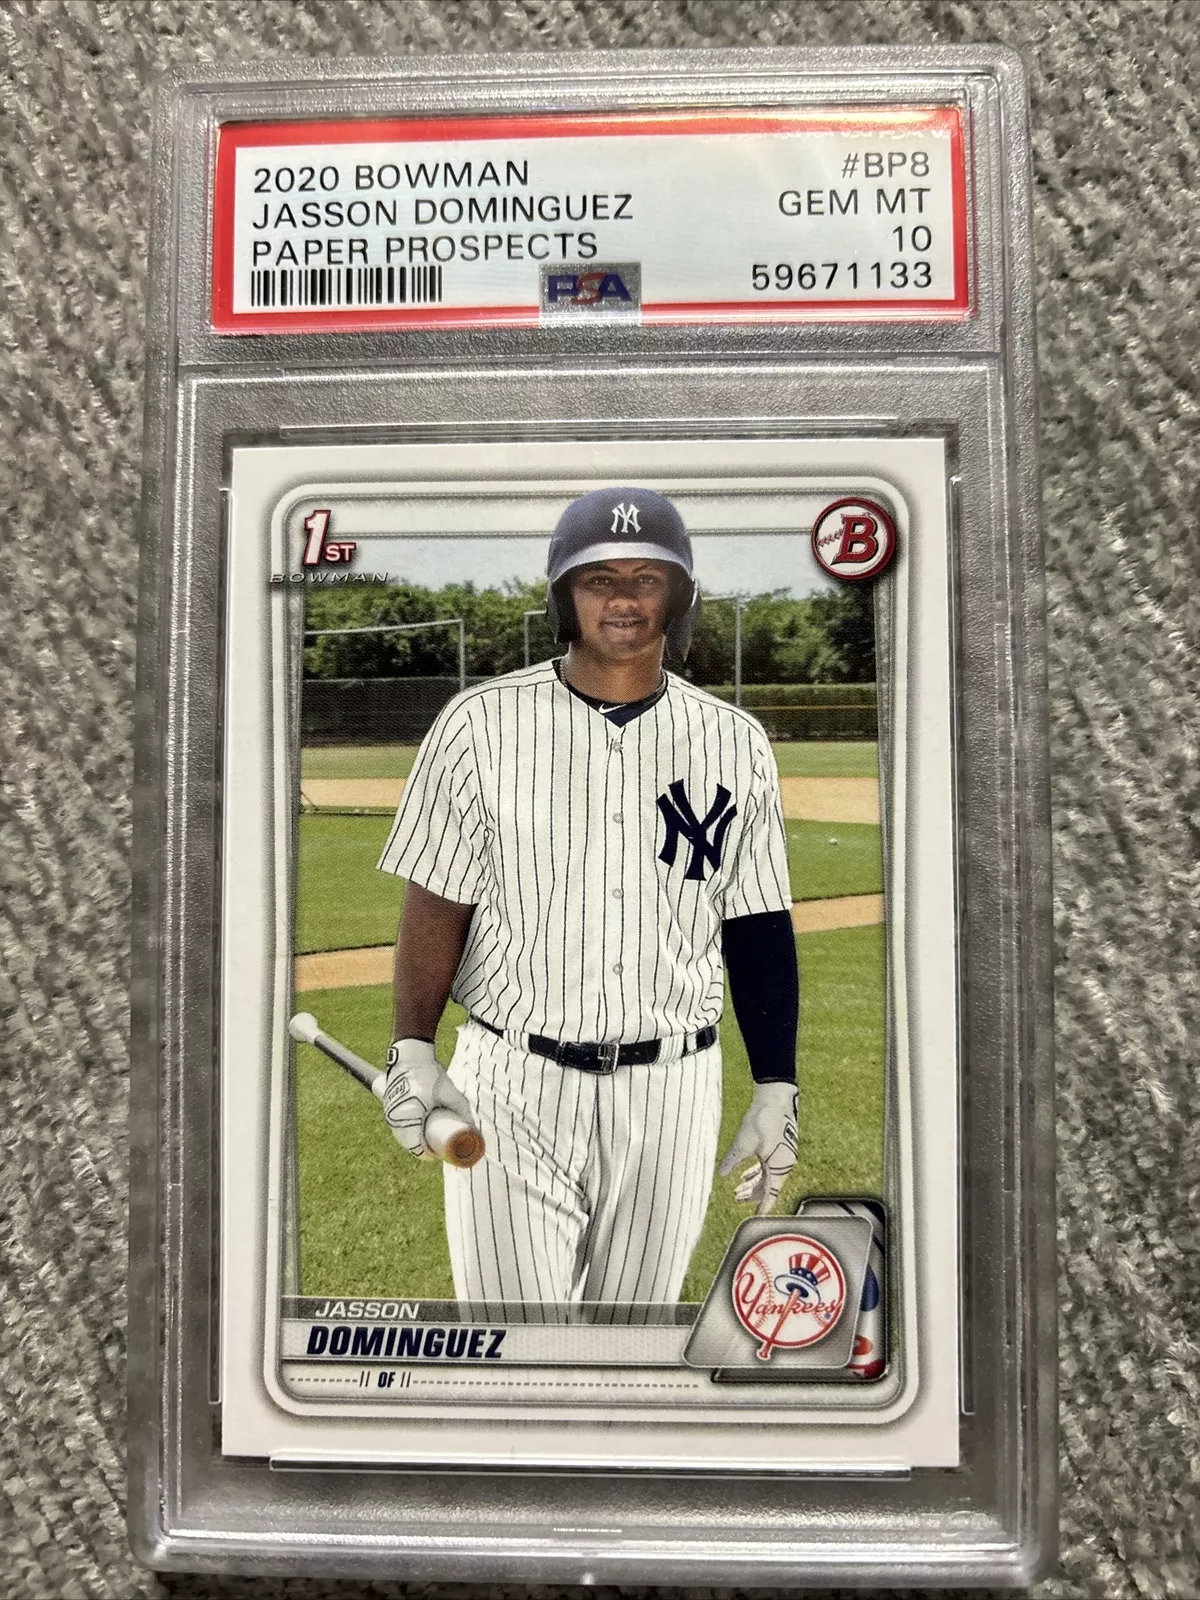 2020 Bowman Prospects Yankees JASSON DOMINGUEZ RC CARD PSA 10 GEM MINT BP8 Paper